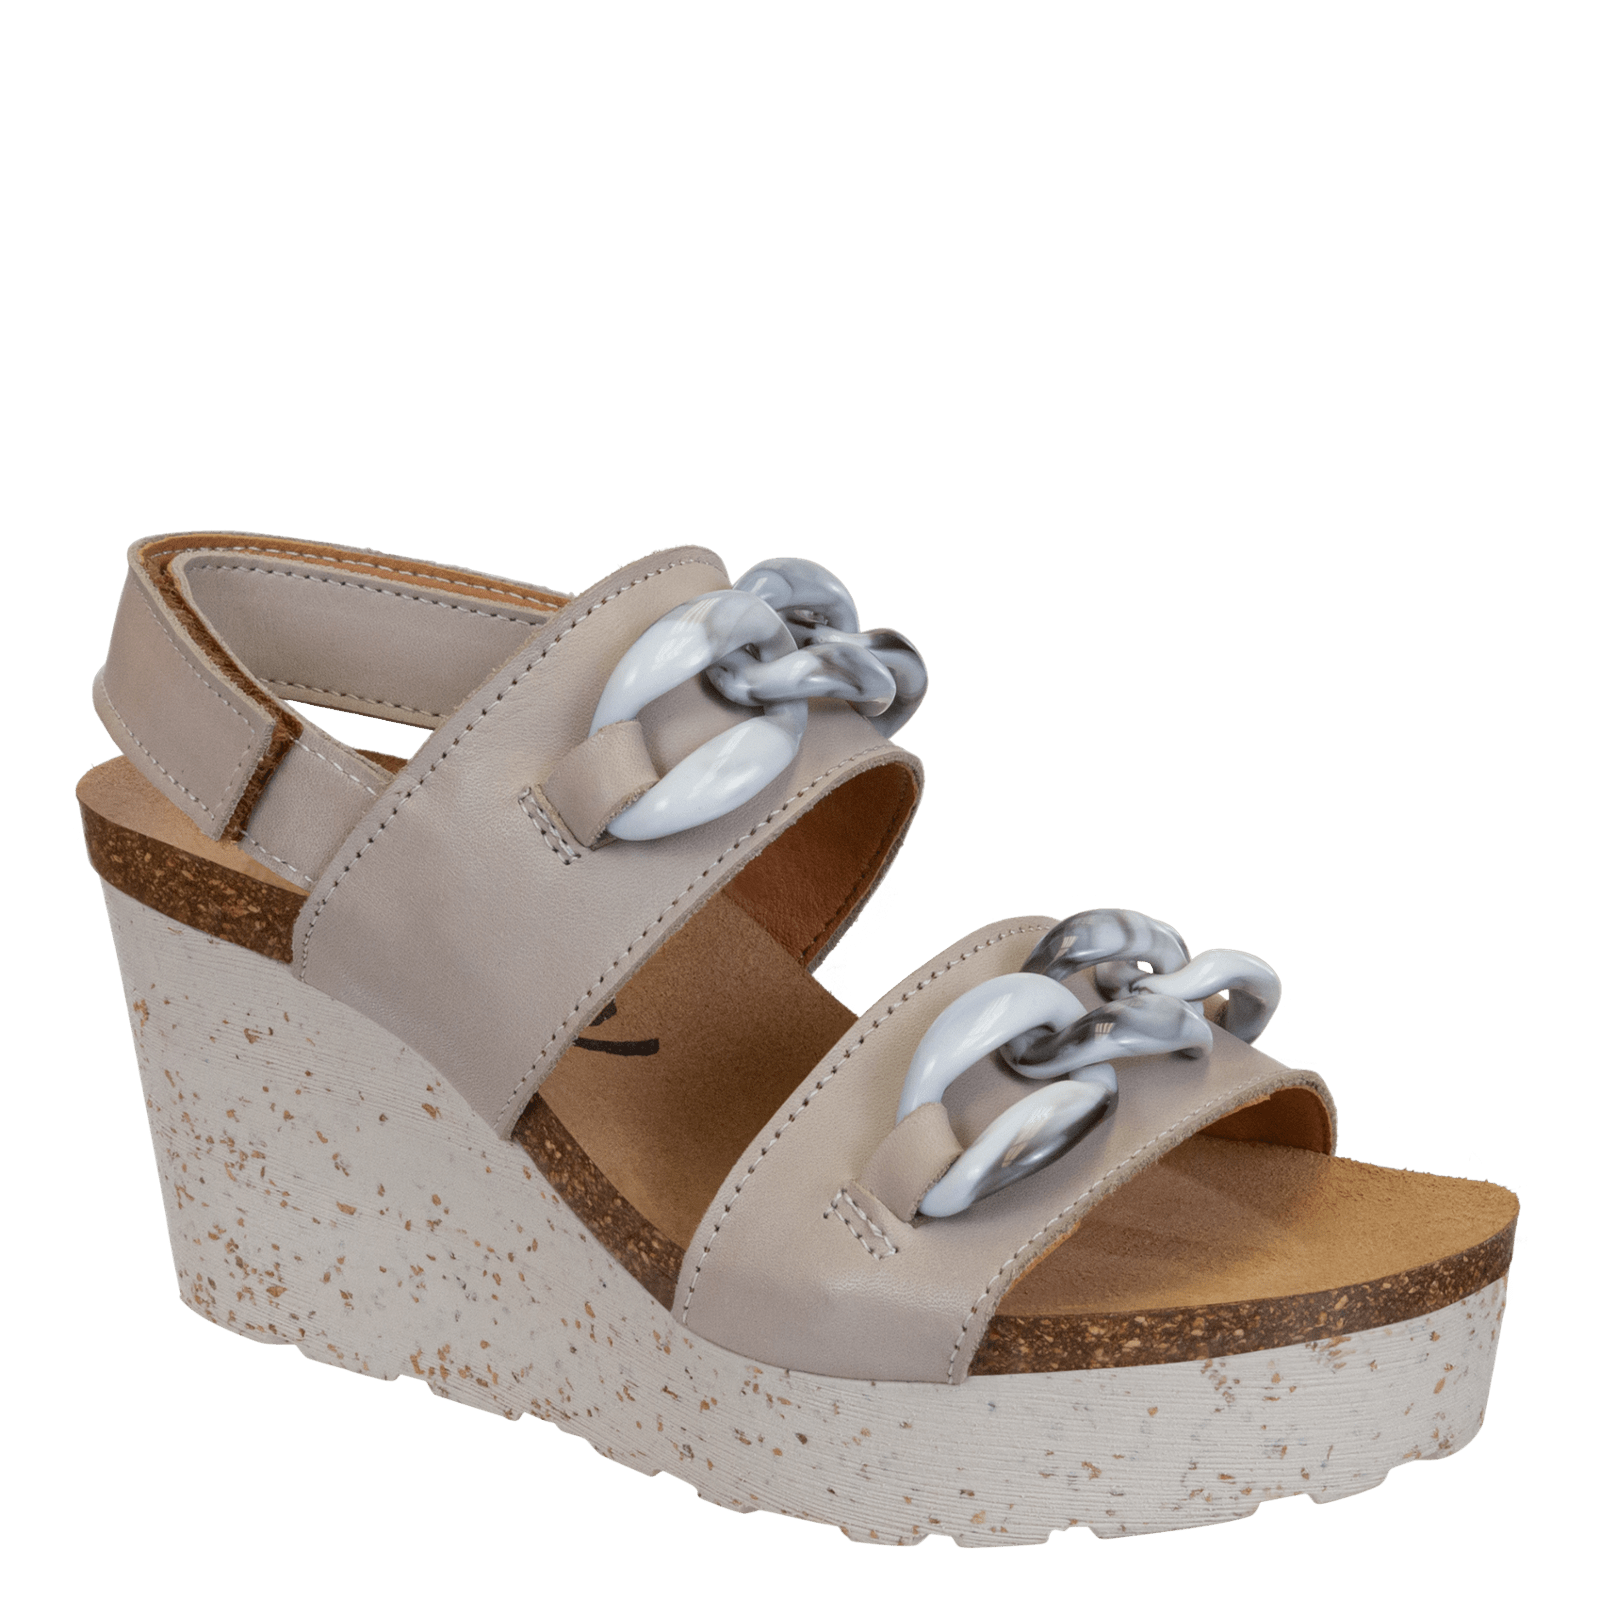 Velcro sandals for women OTBT shoes